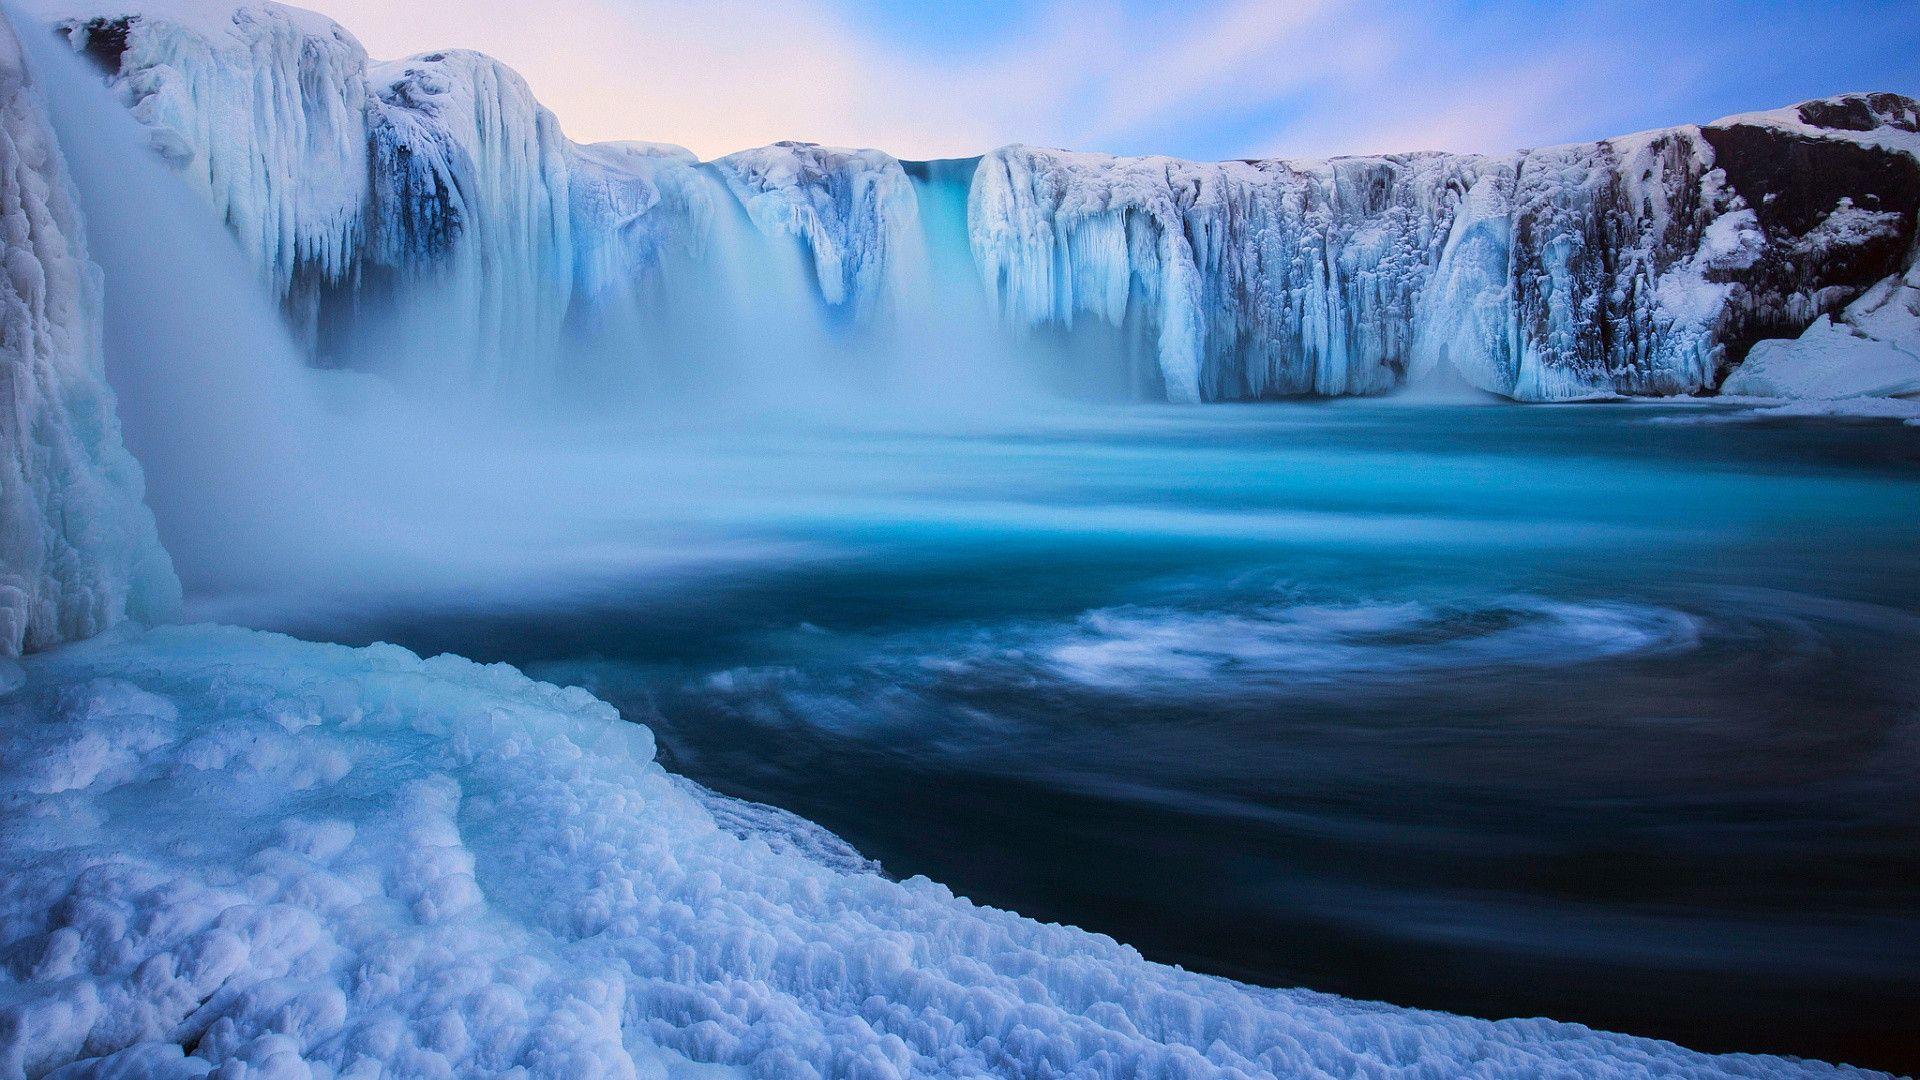 Godafoss Waterfall Iceland Wallpaper, iPhone Wallpaper, Facebook